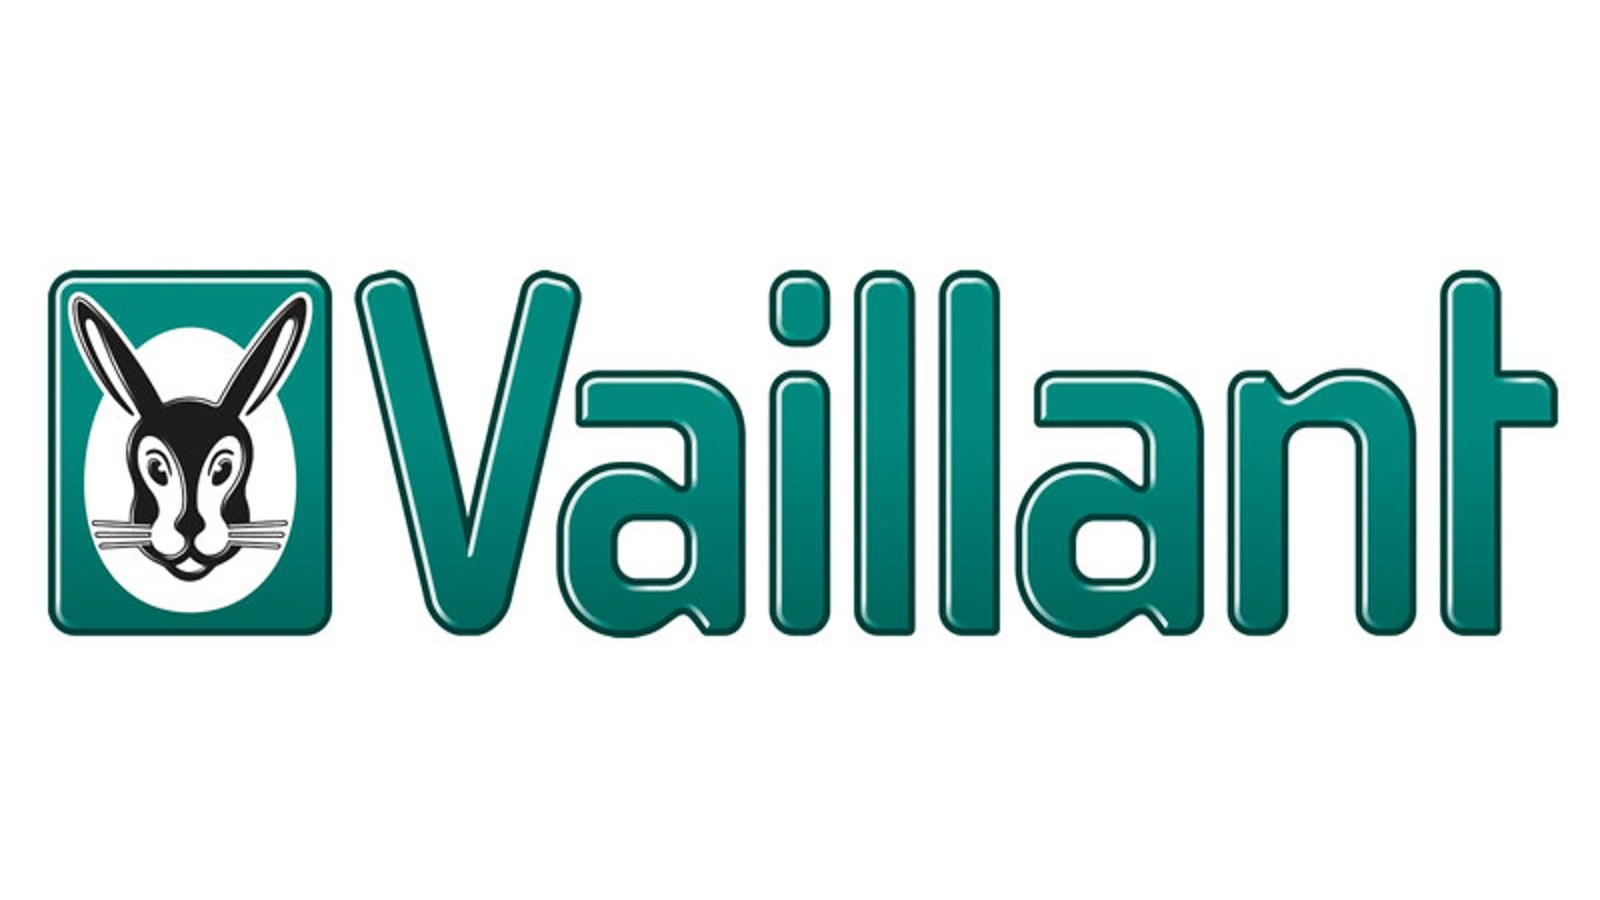 Успешное завершение roll-out проекта в компании Vaillant Group